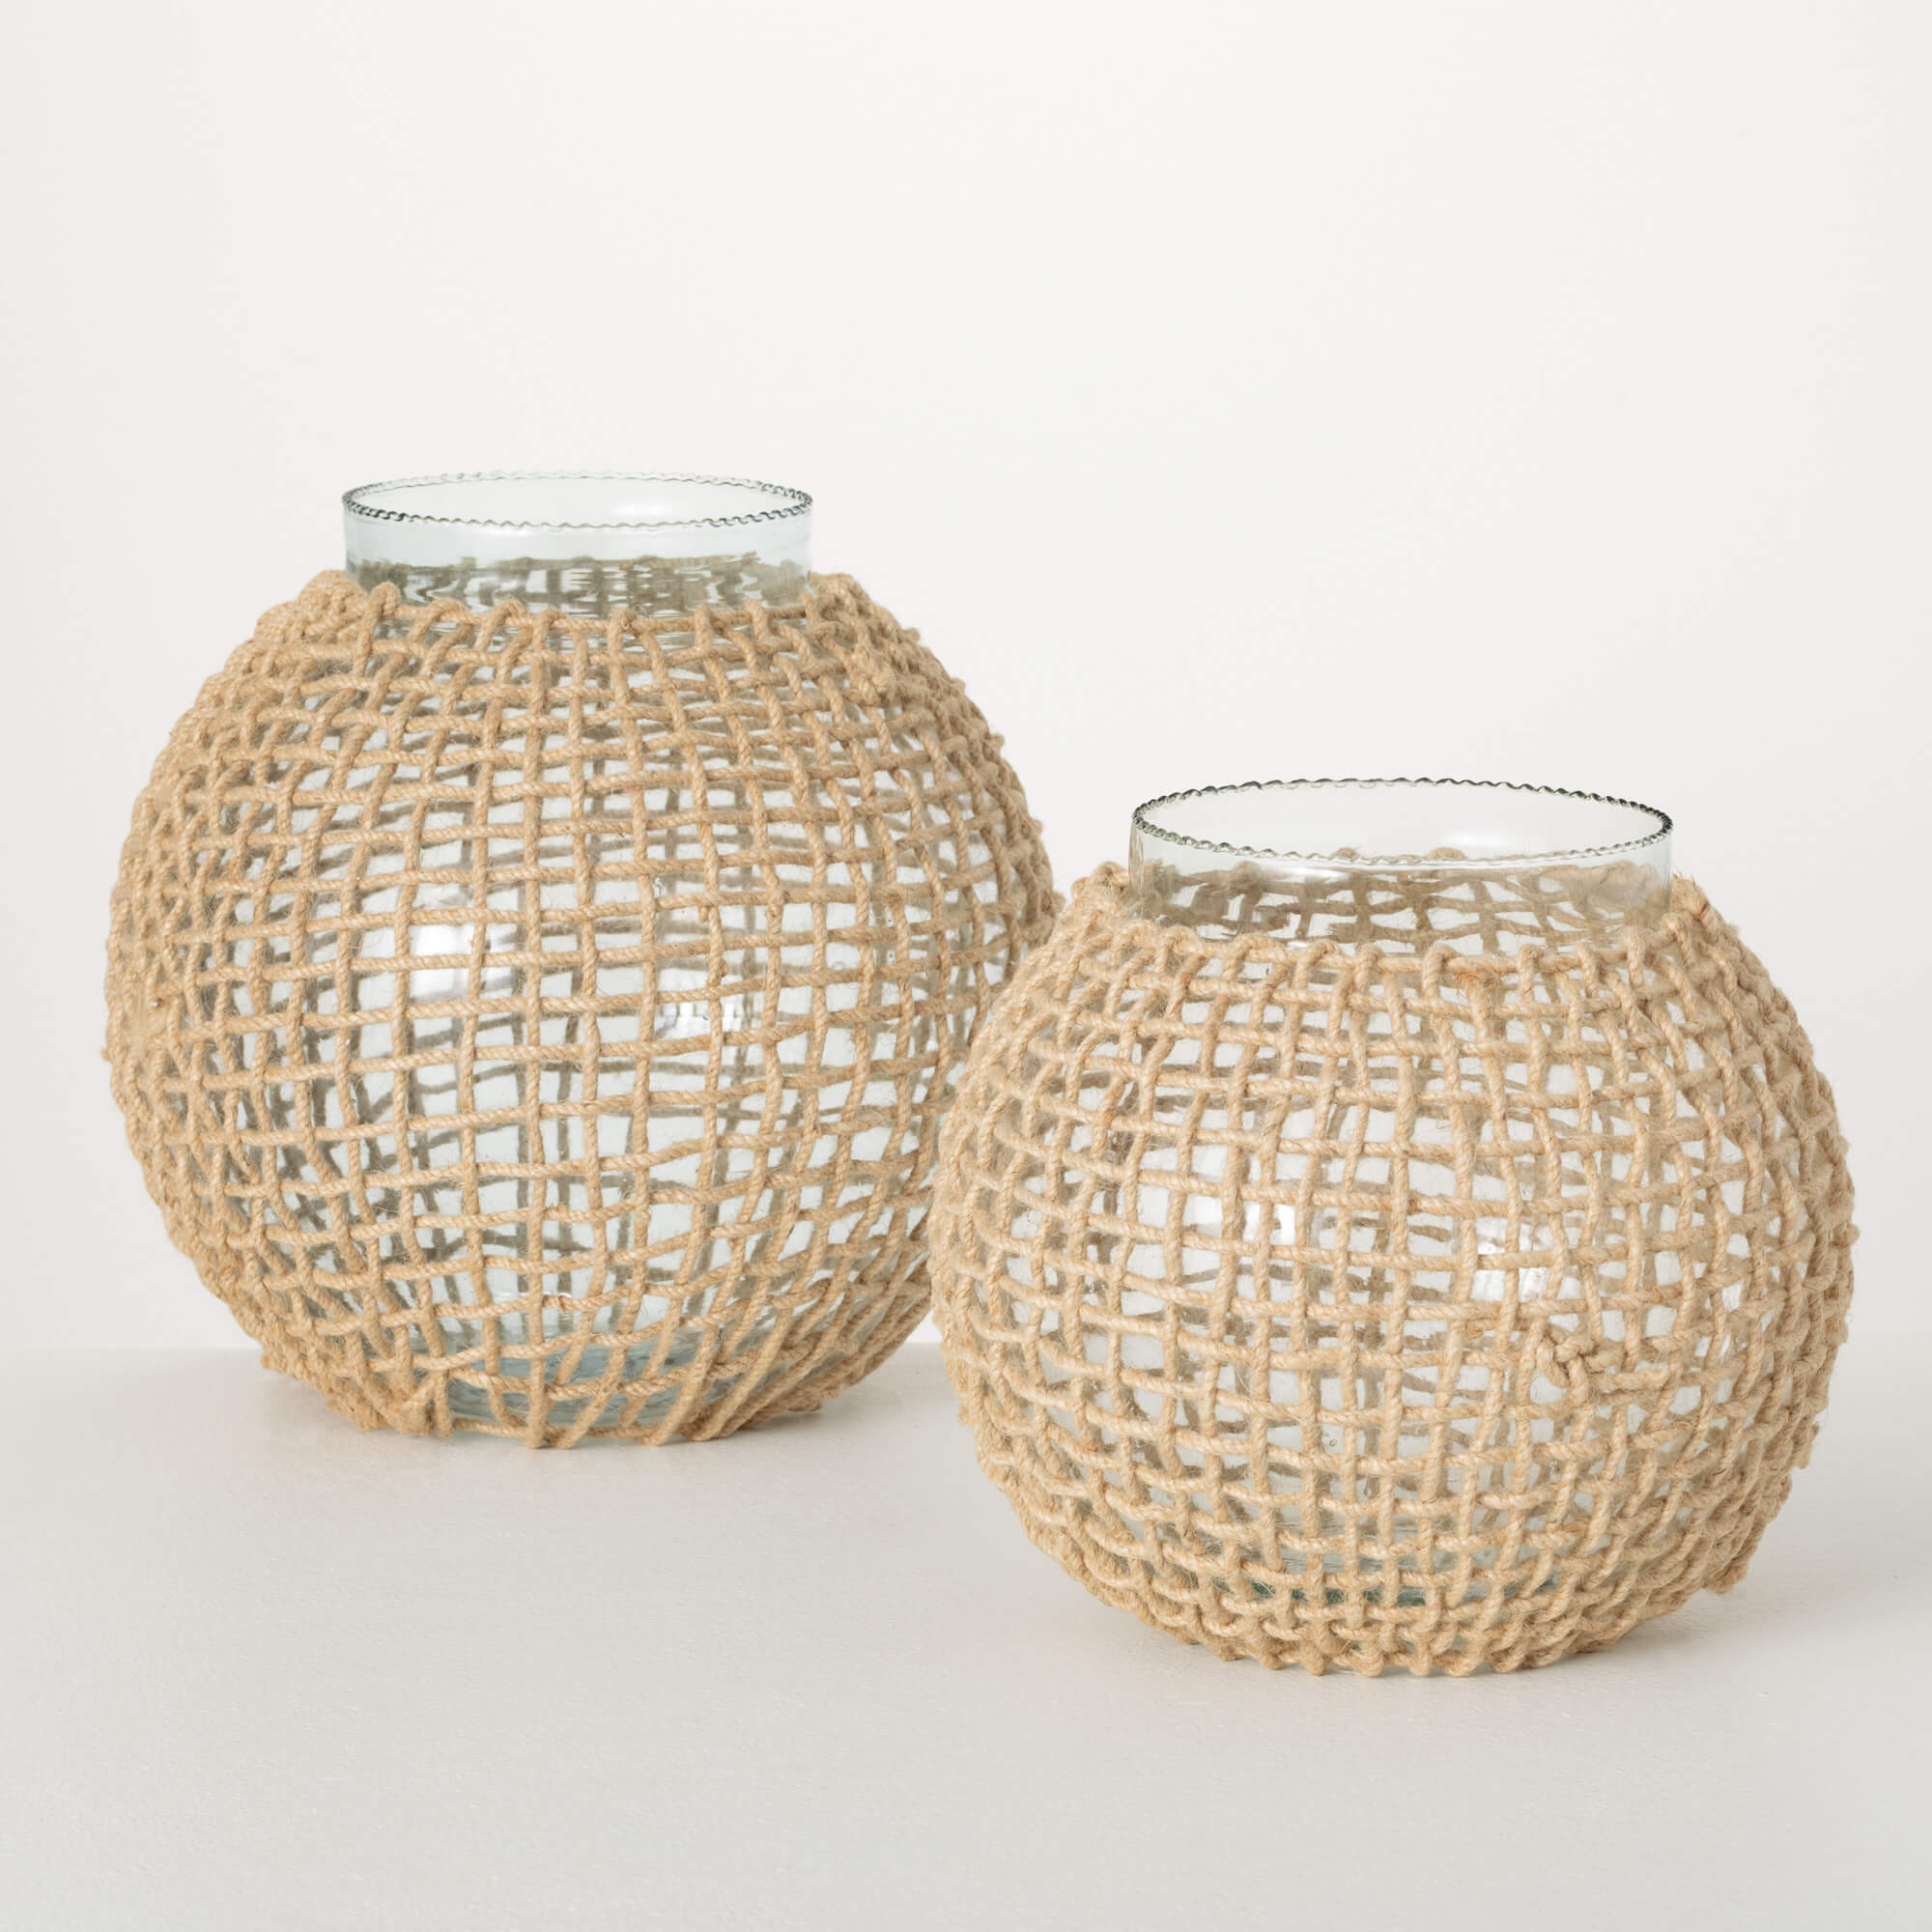 View Sullivans - Woven Rattan & Glass Vases - Small